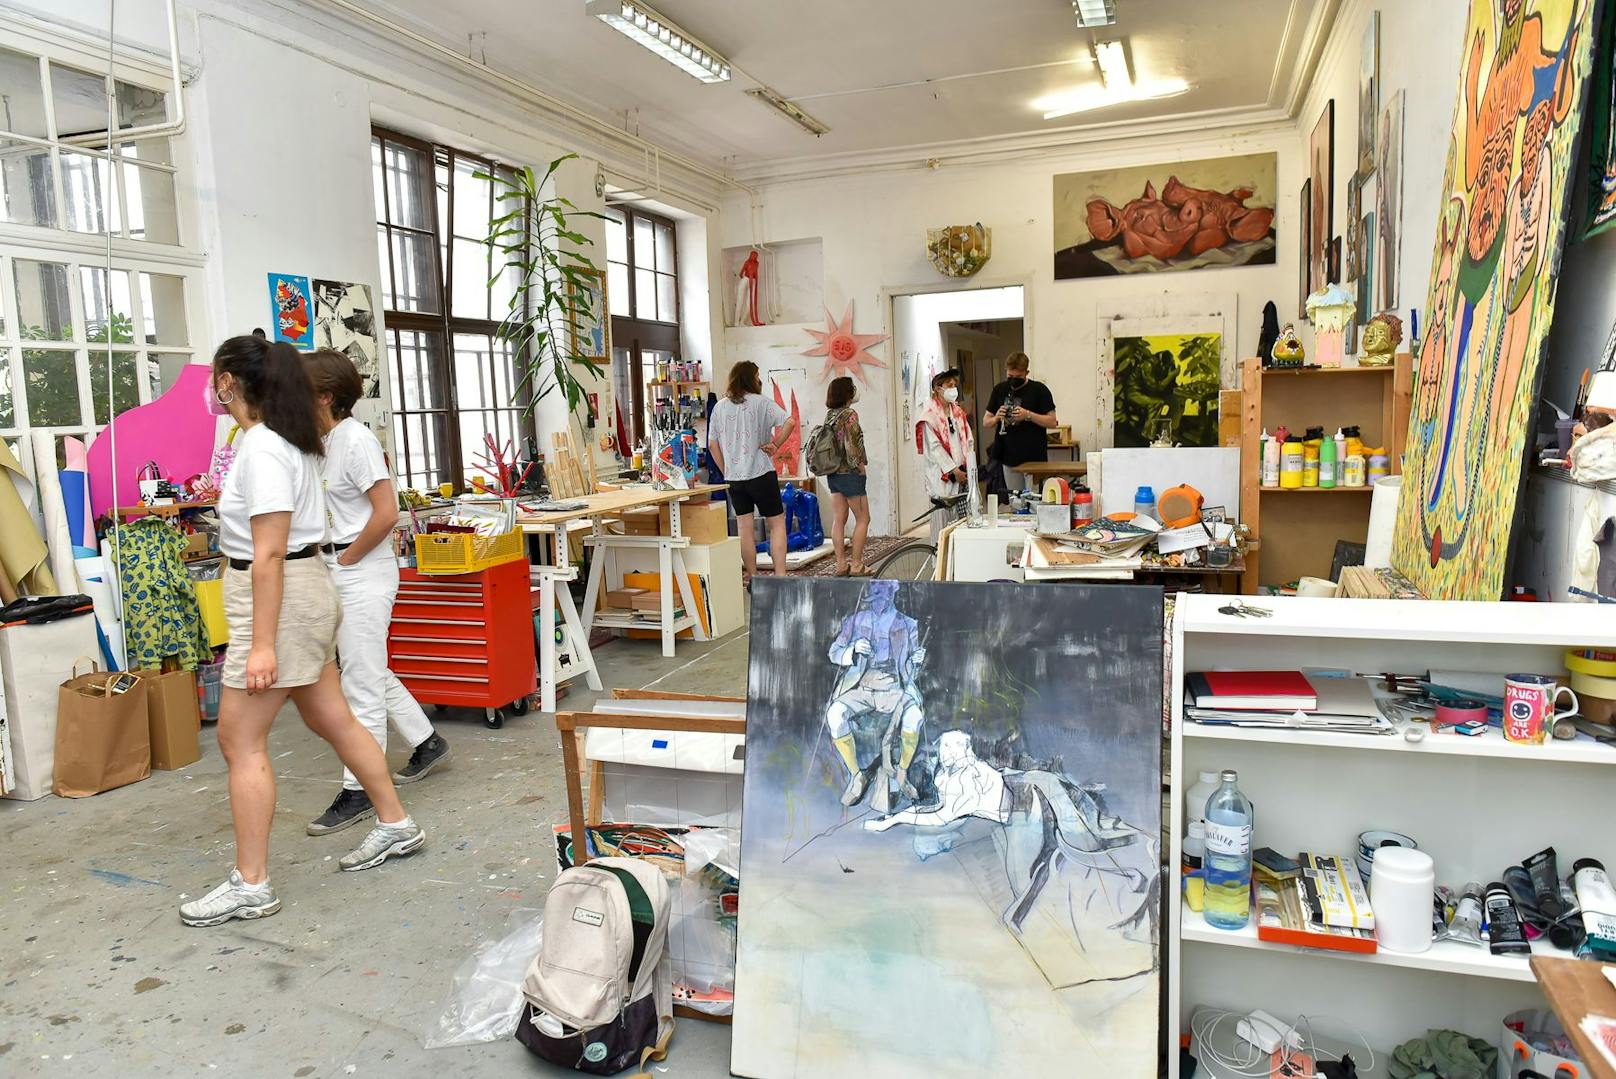 Beim "Grätzl Art Open" spazieren Kunst-Interessierte durch Ateliers, die sonst nicht öffentlich zugänglich sind und treffen Künstler persönlich.